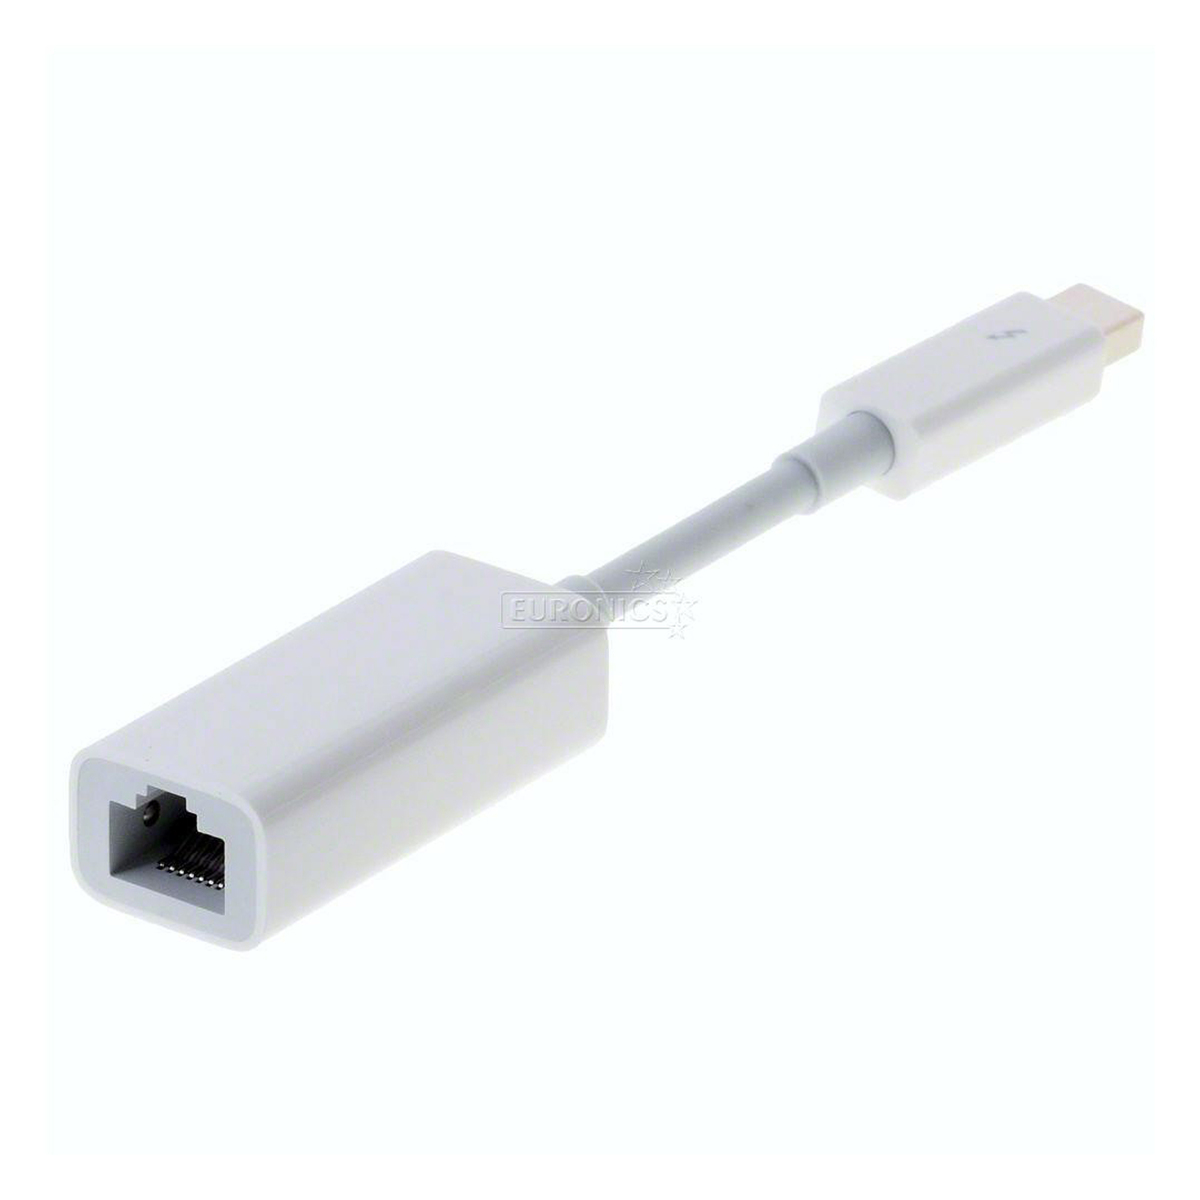 Apple Thunderbolt to Gigabit Ethernet Adapter MD463